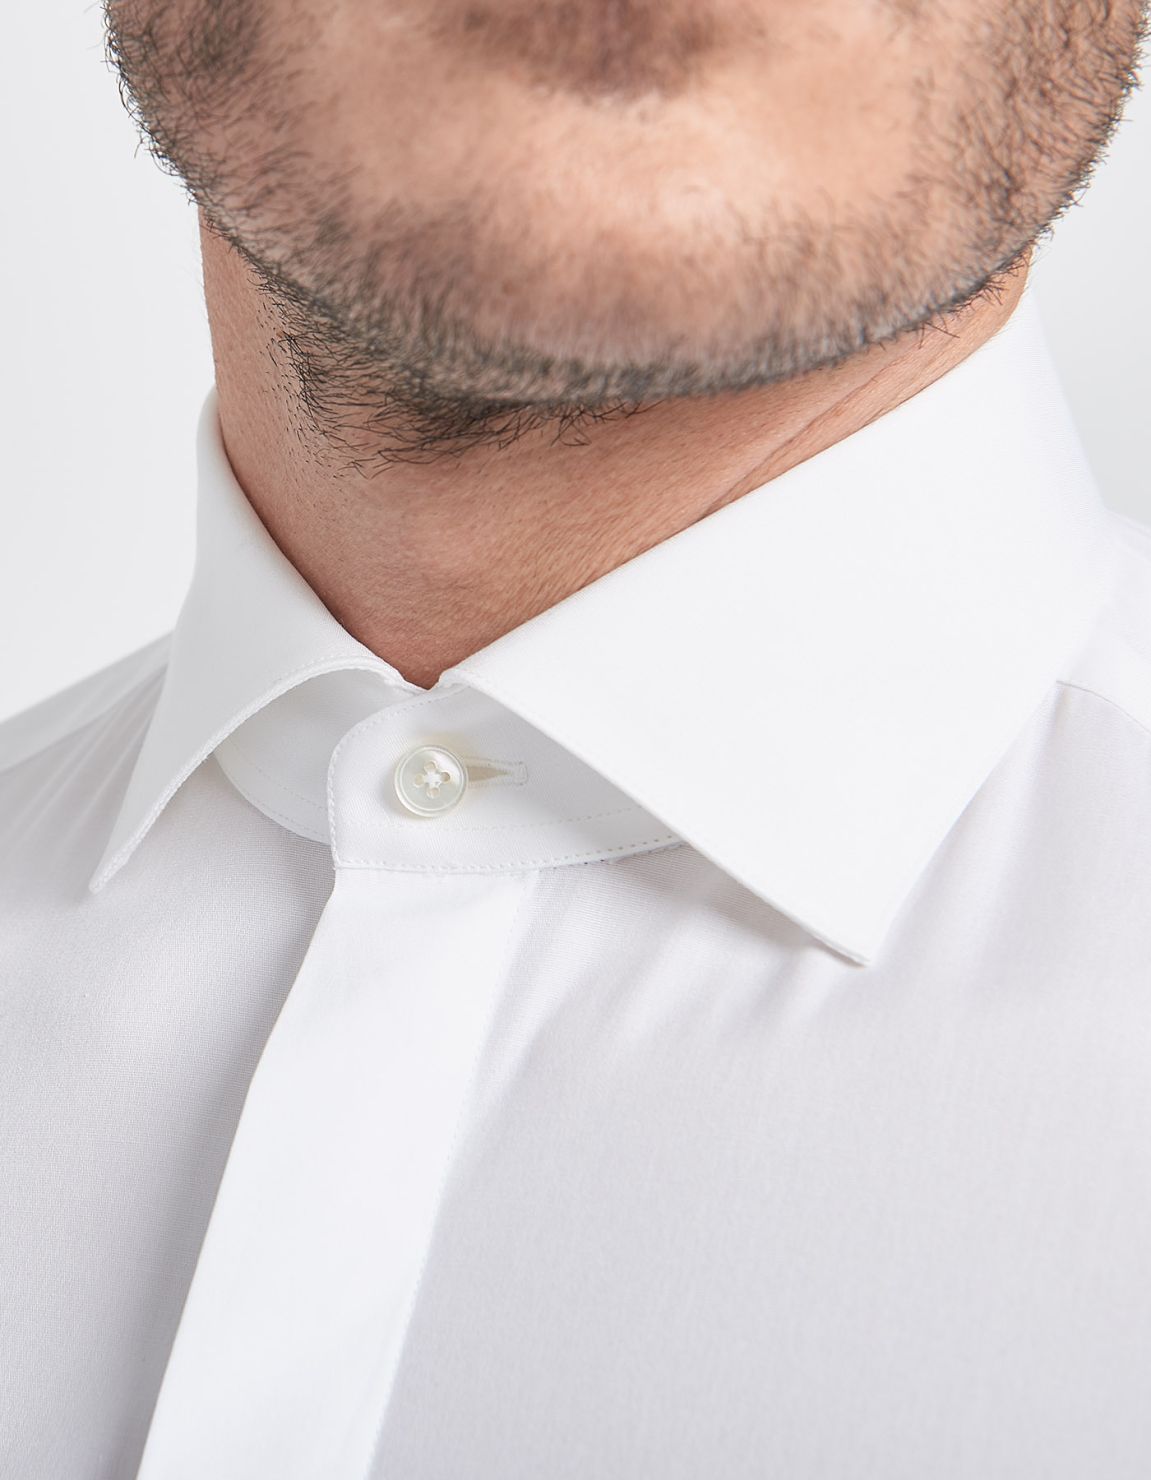 Camisa Cuello francés Blanco Tela Liso Slim Fit 3